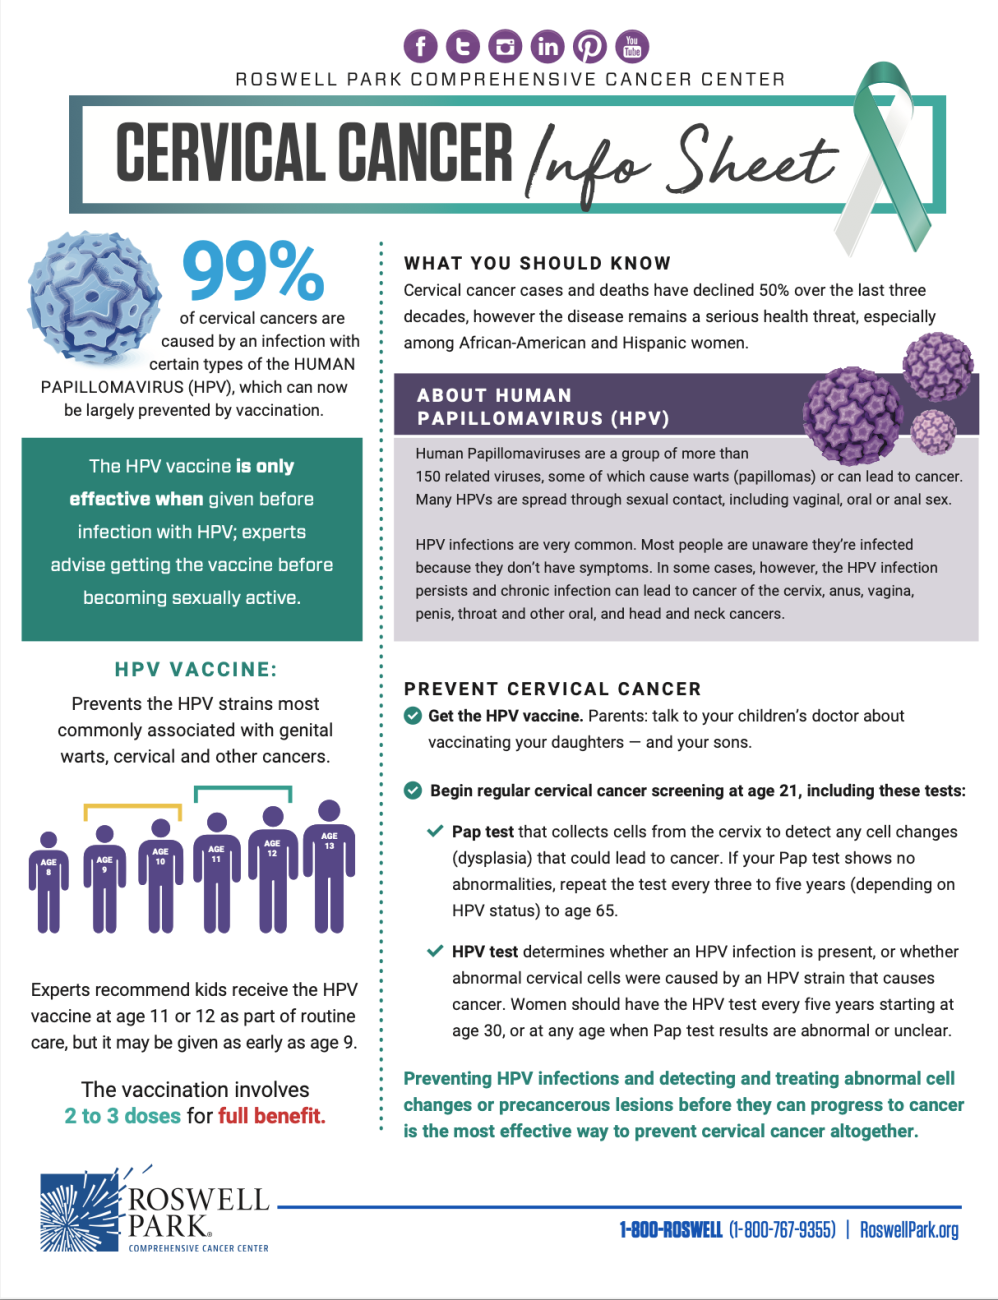 Cervical Cancer Info Sheet